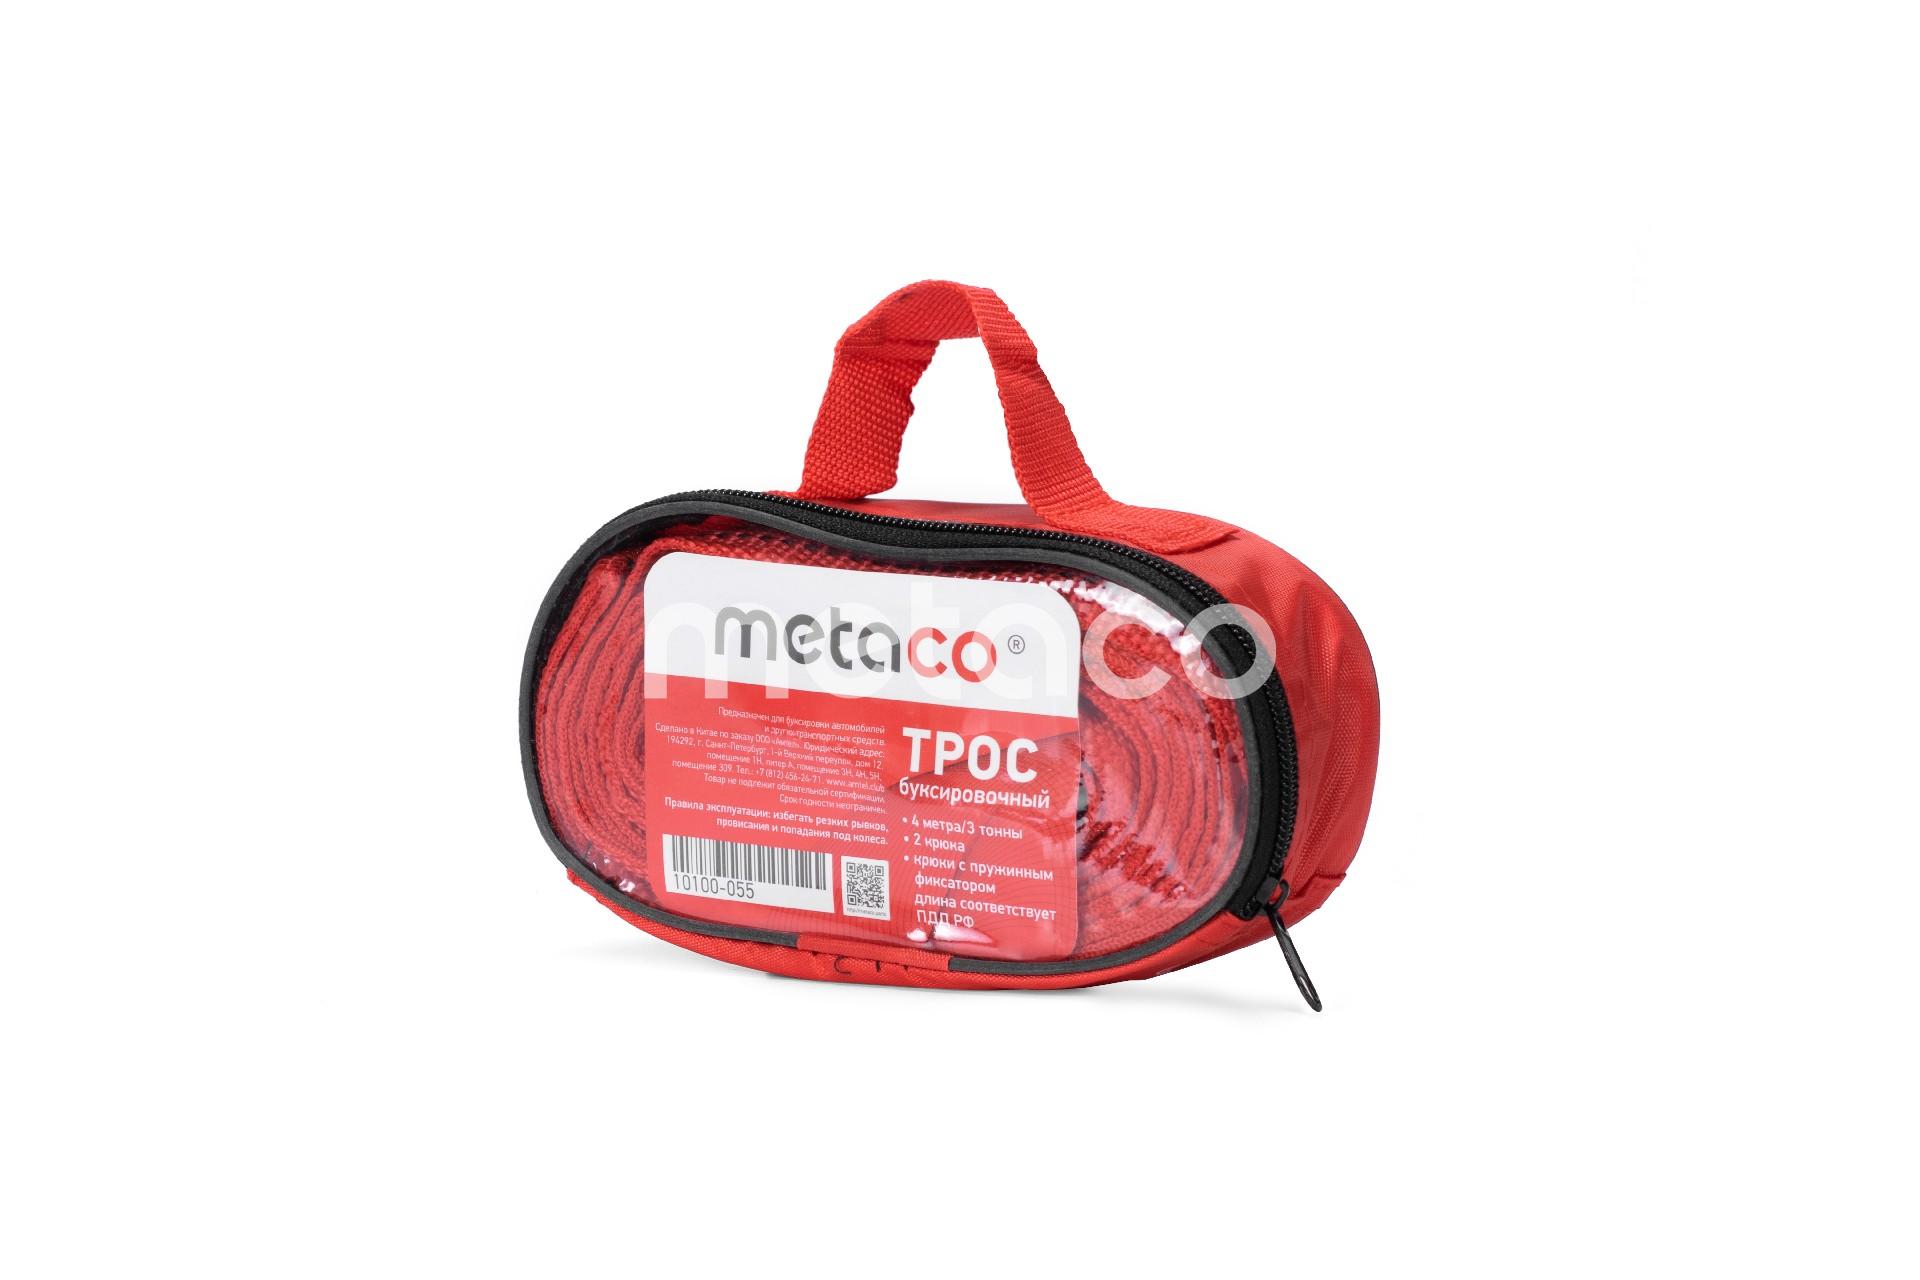 Metaco 10100-055